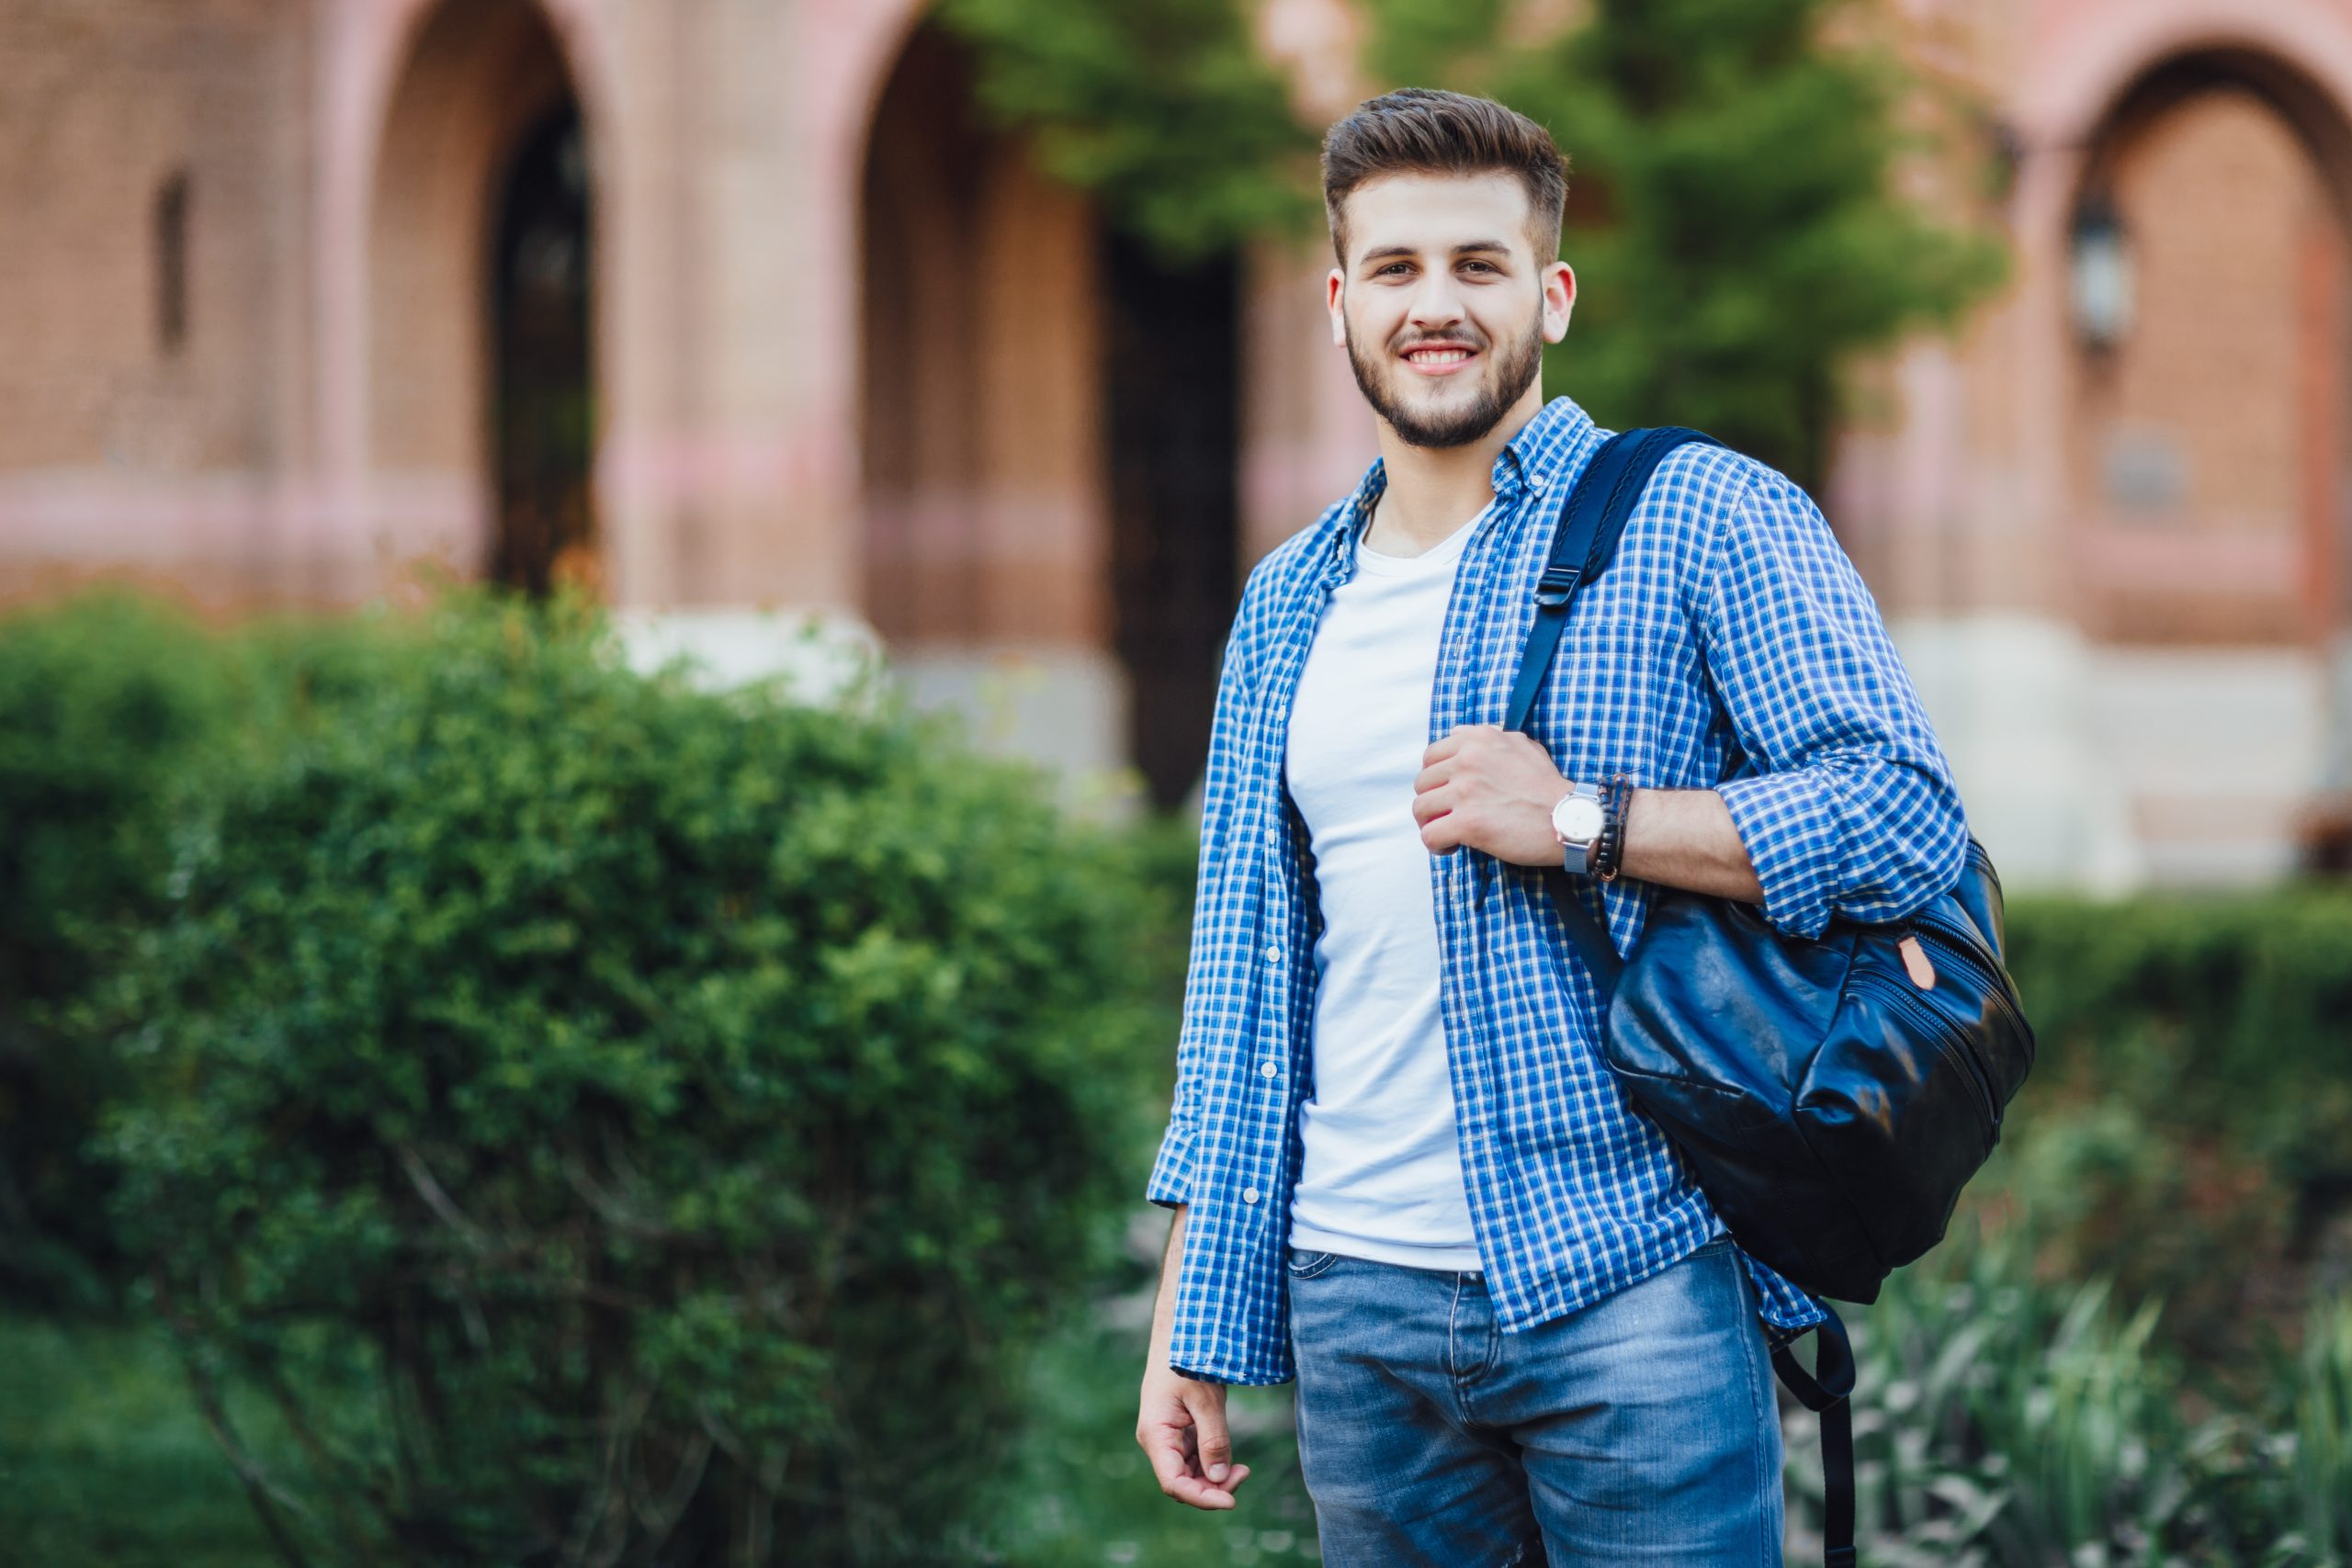 Estudante universitário posa com mochila nas costas no campus da universidade